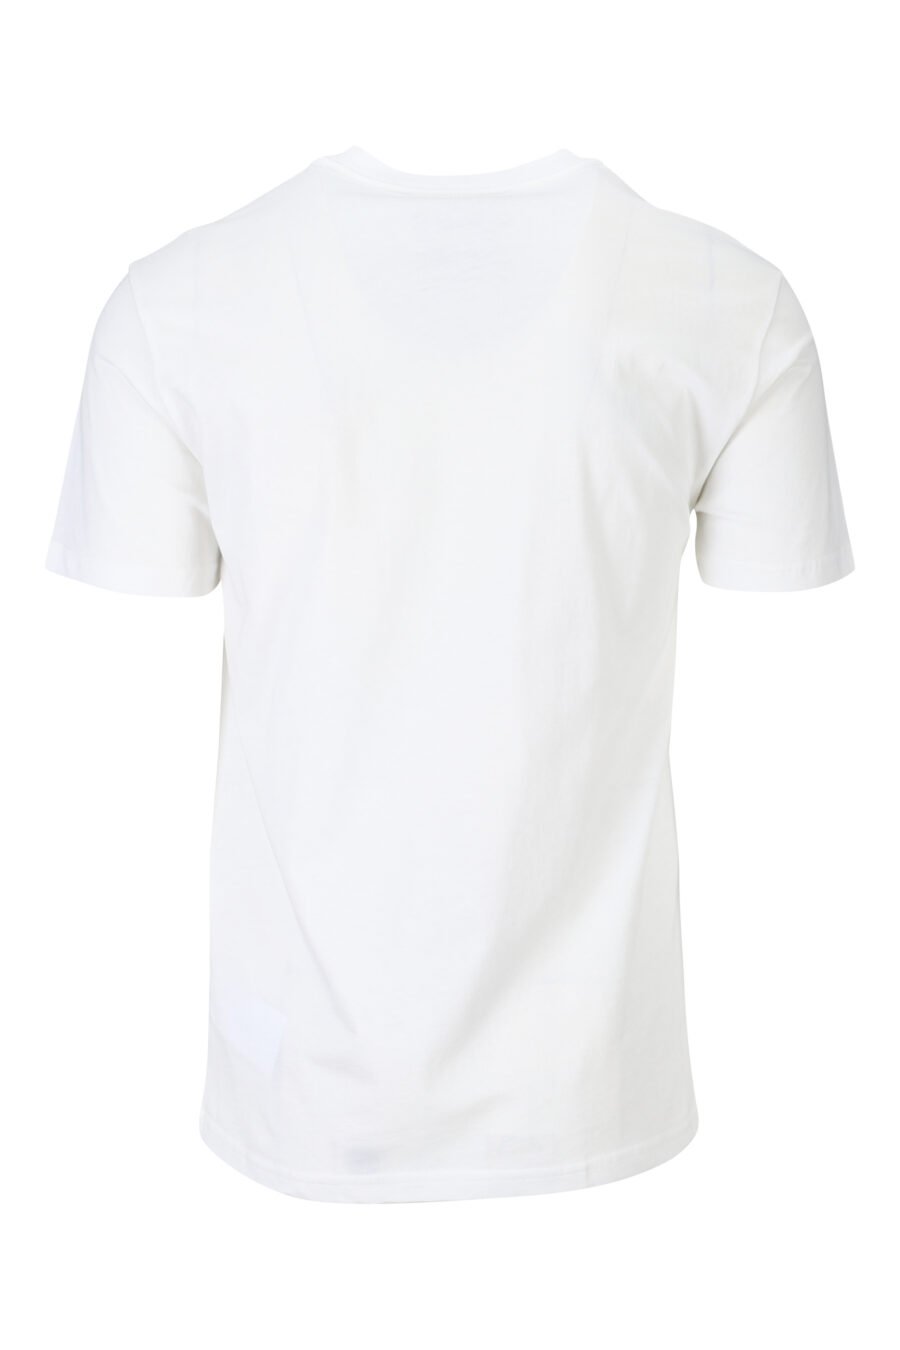 Weißes Öko-T-Shirt mit Bärchen-Mini-Logo - 889316725384 1